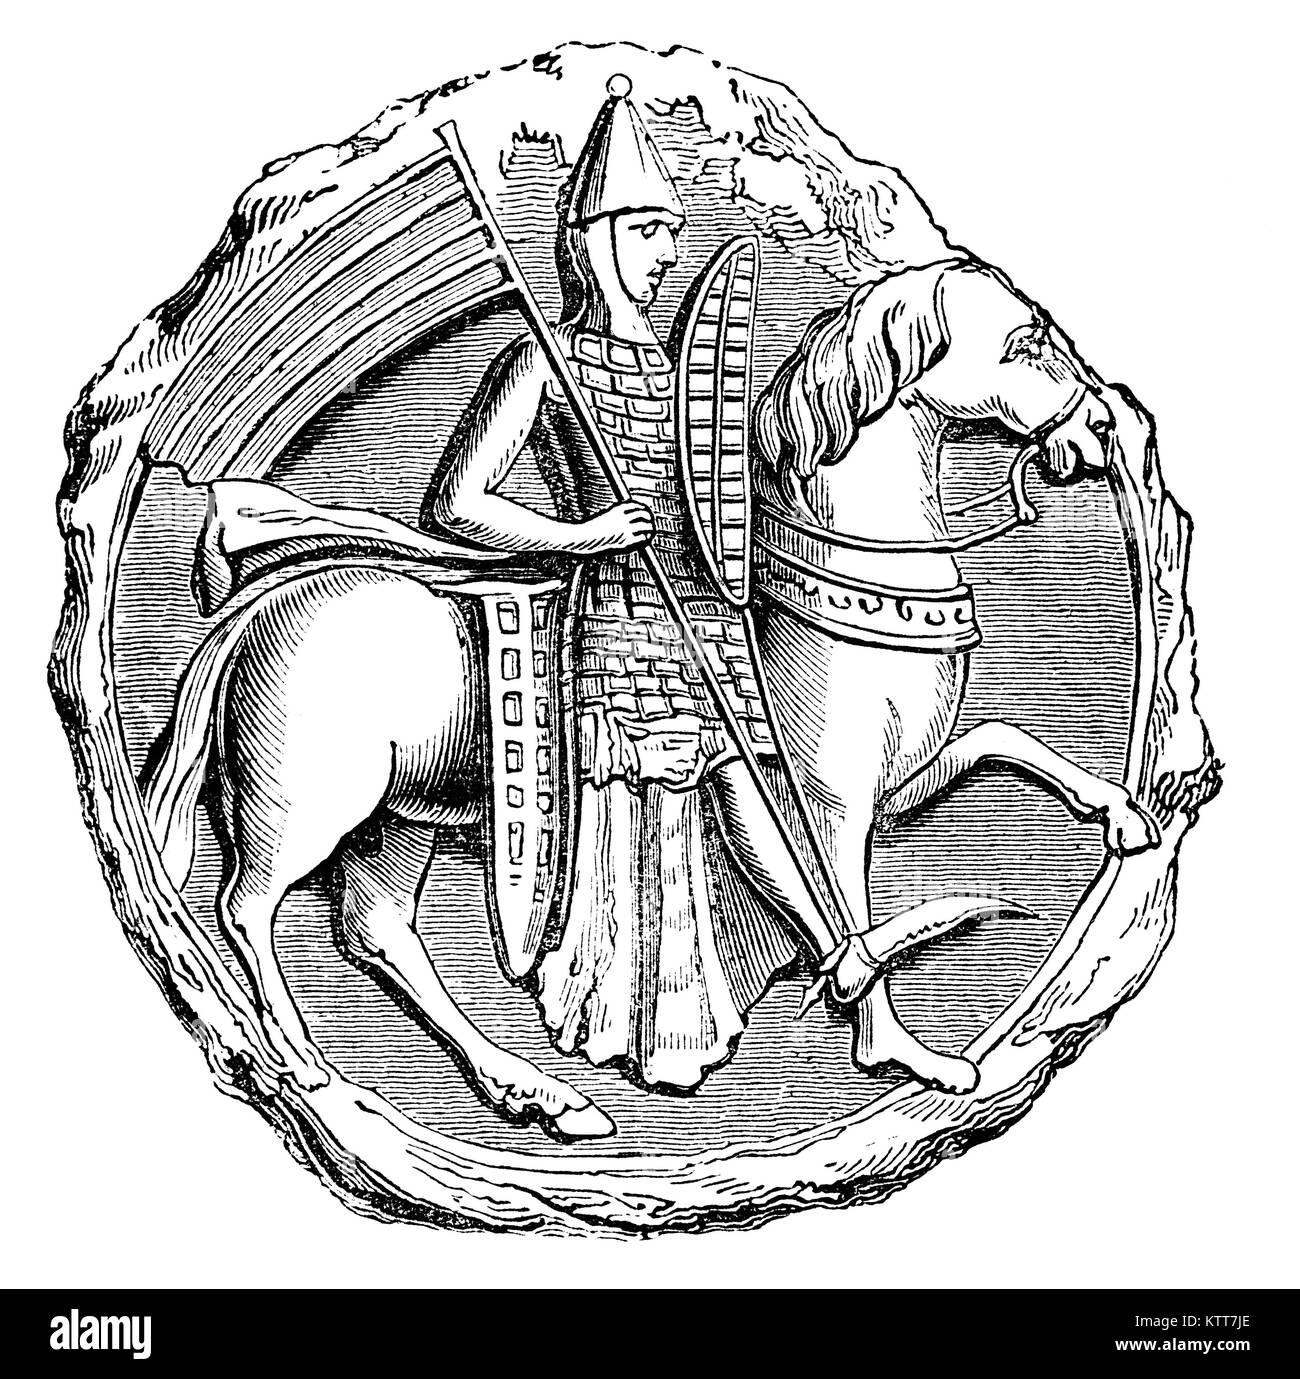 Un inizio del XIII secolo soldato medievale a cavallo tegulated indossare la corazza, composta di piccole piastre, come del clacson o metallo sovrapposte come le tegole. Foto Stock